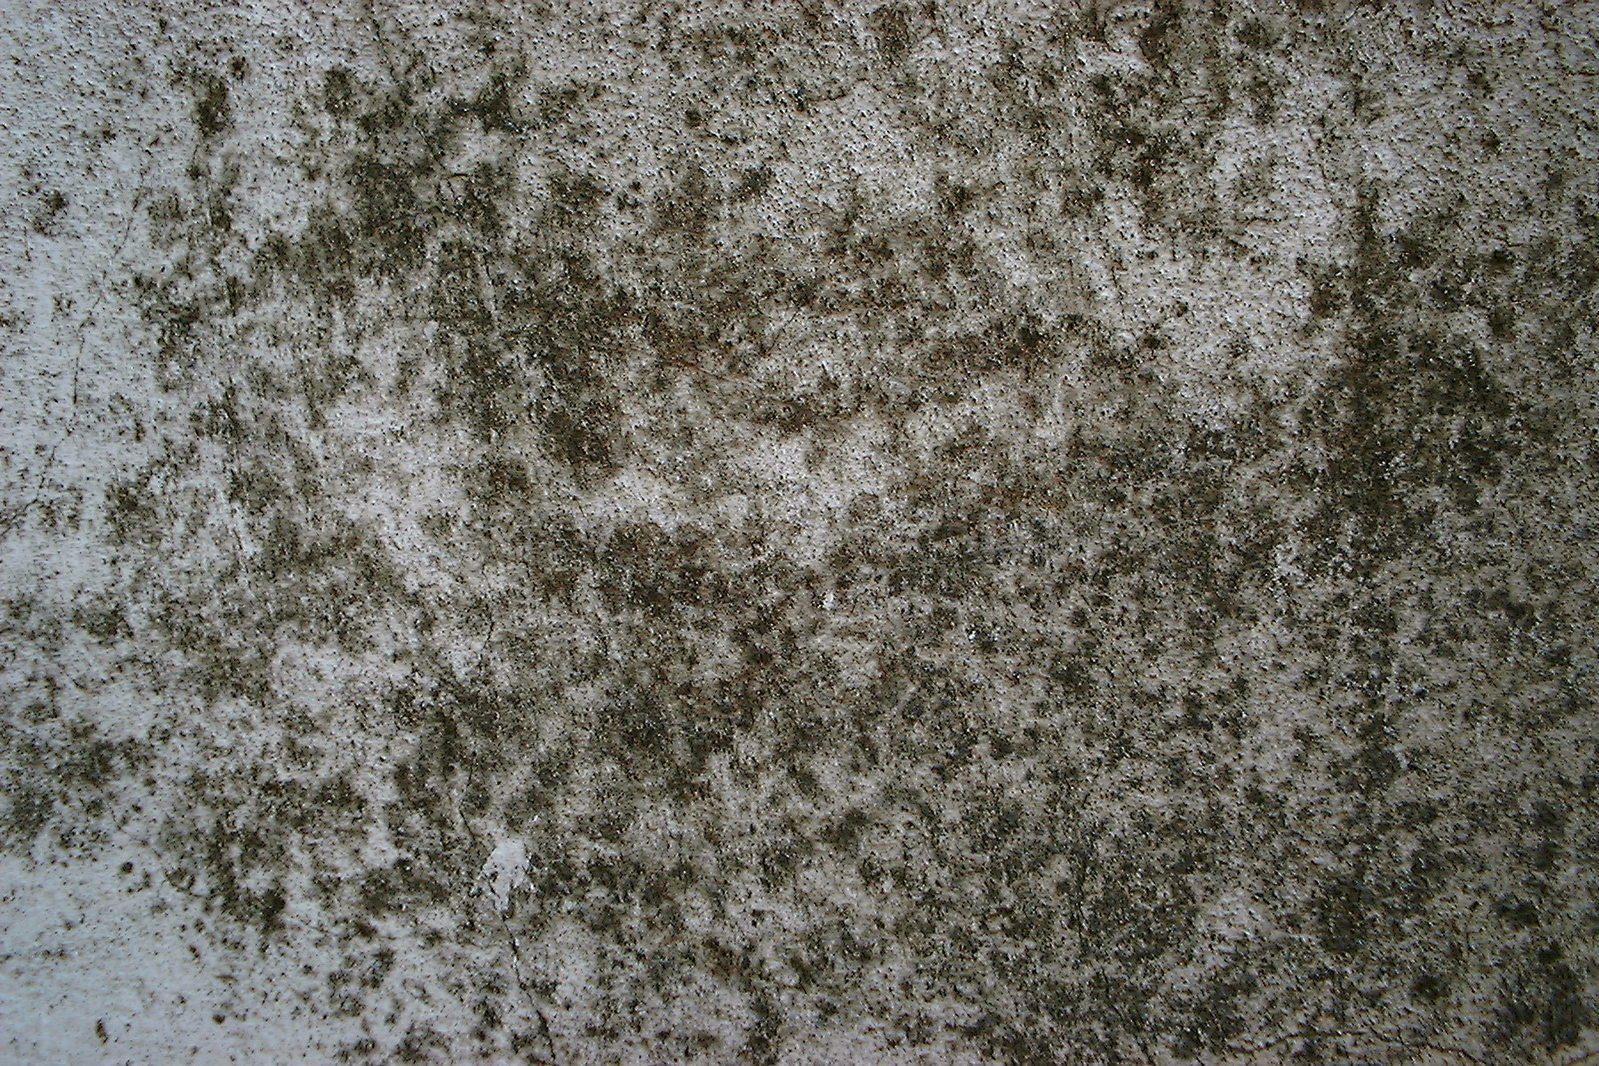 Mold and mildew - mildew on concrete